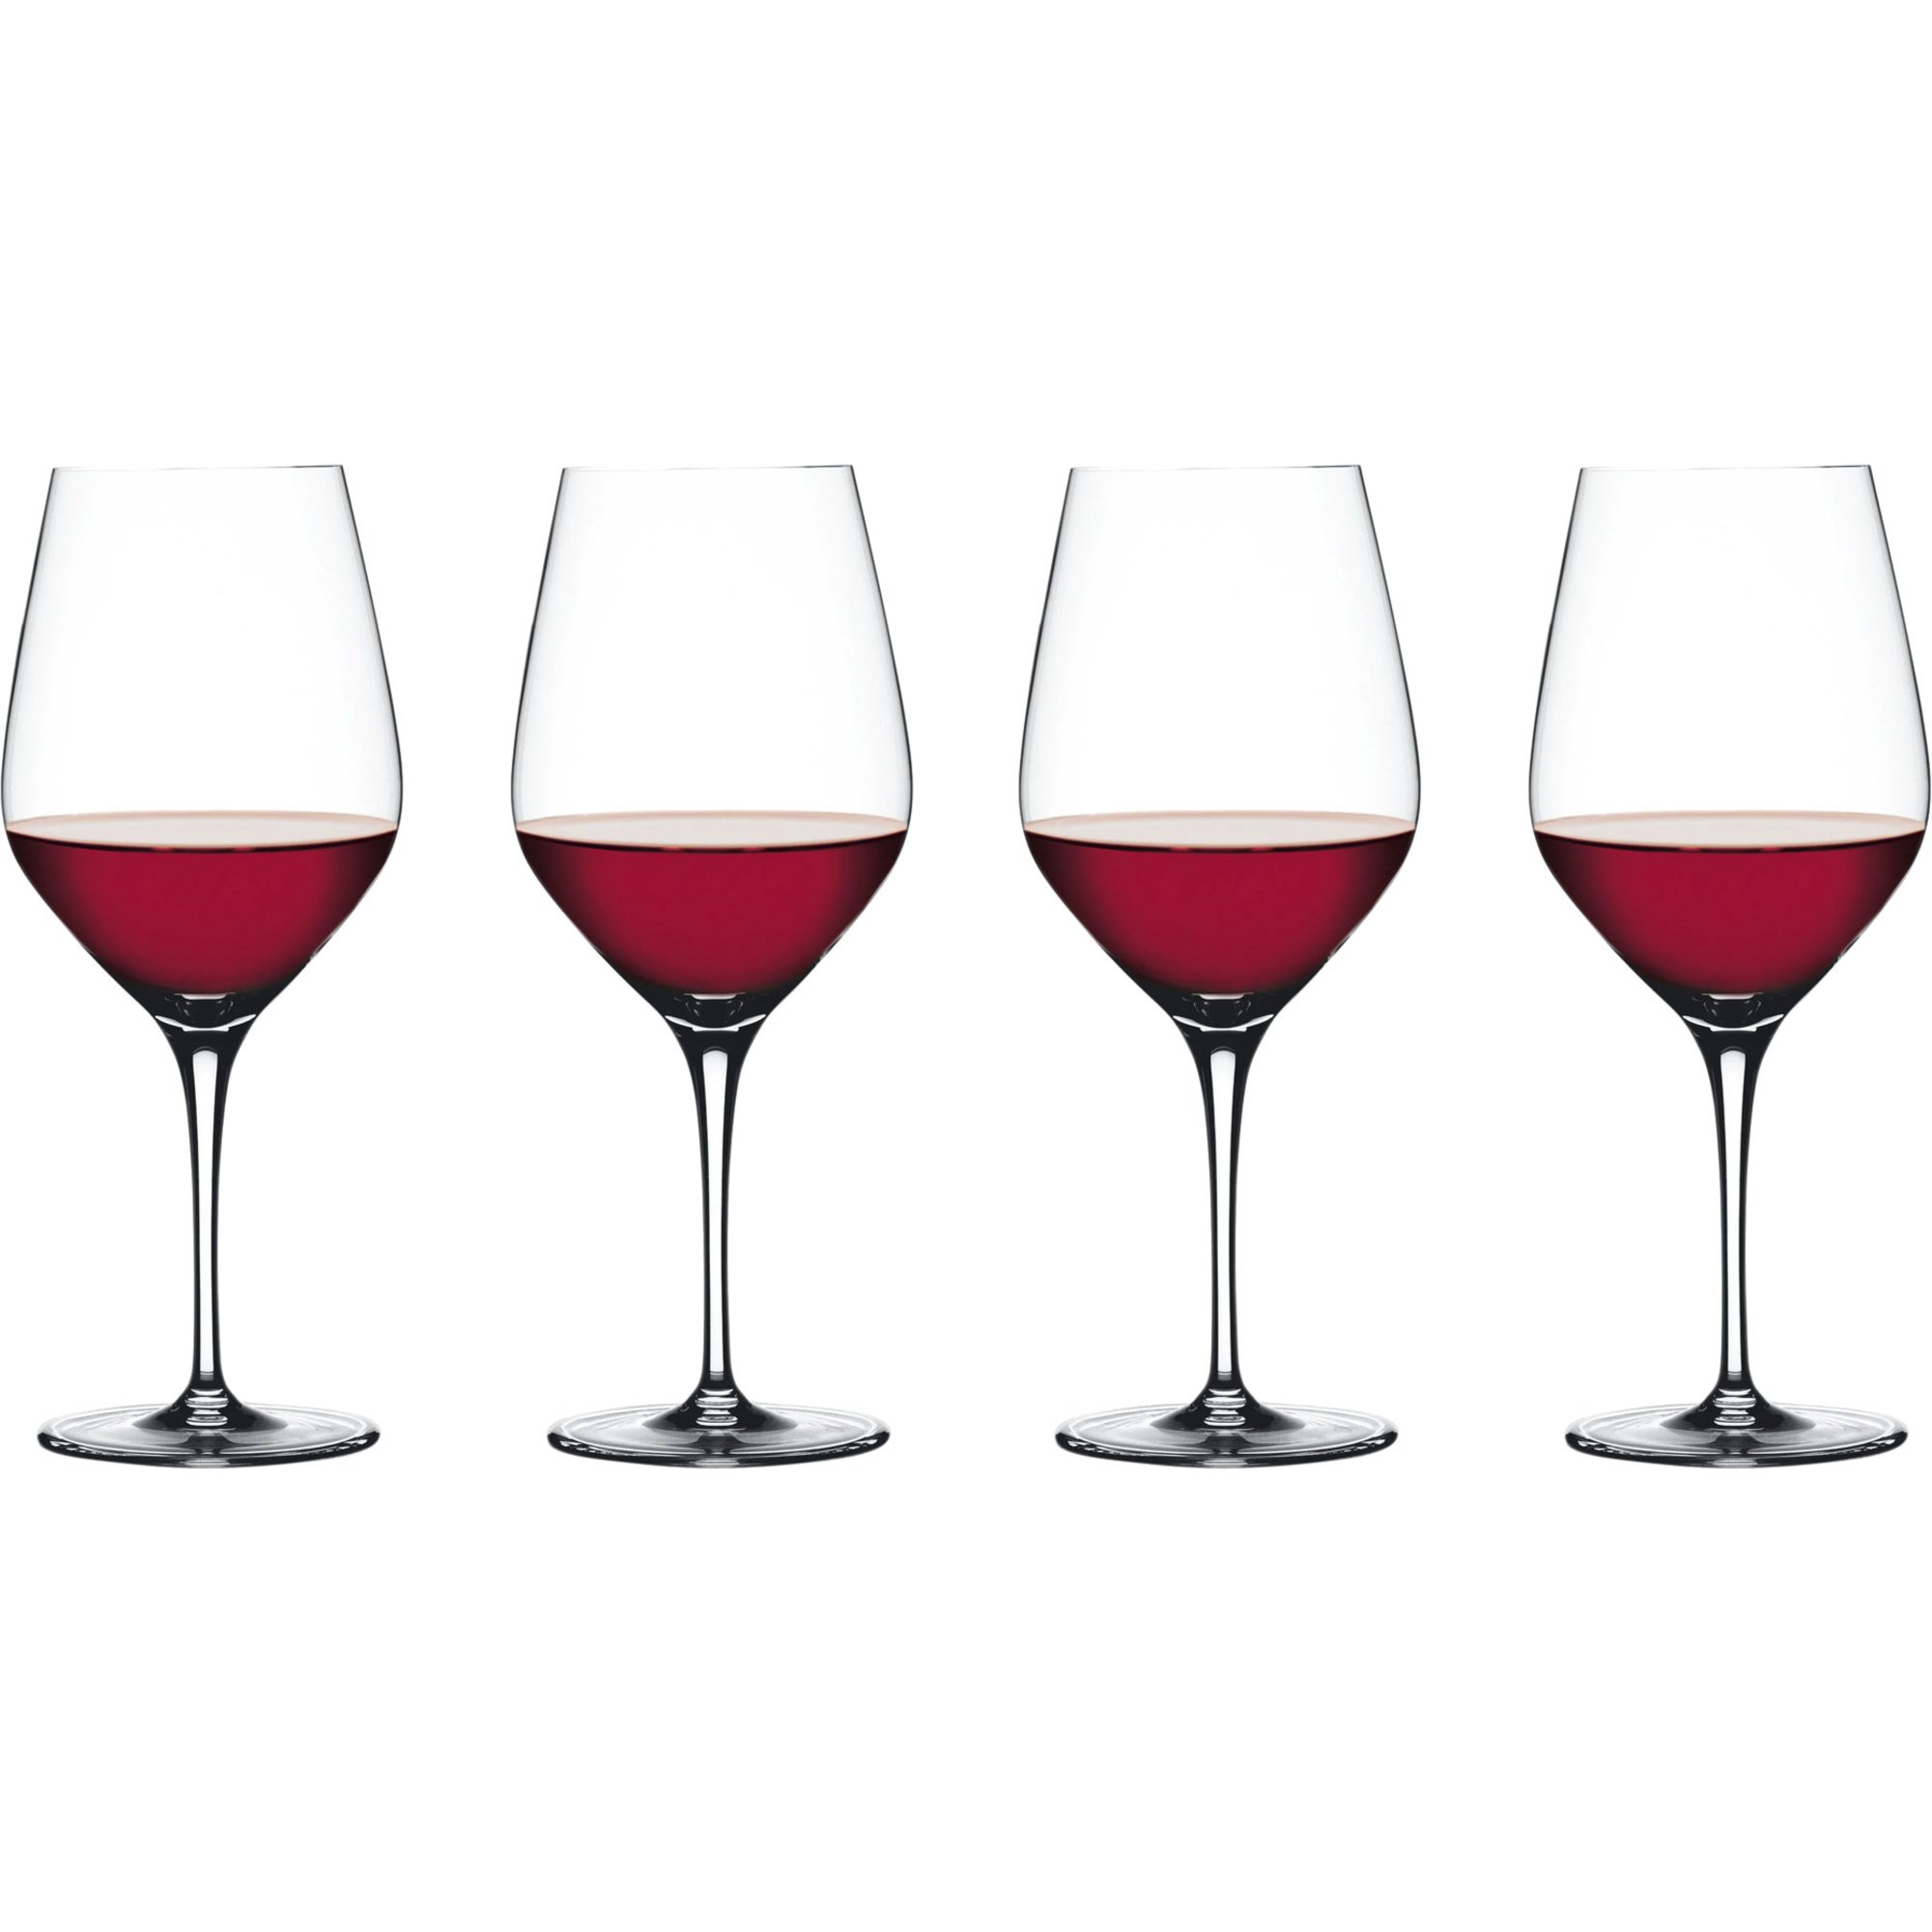 #2 - Spiegelau Authentic Vinglas Bordeaux glas